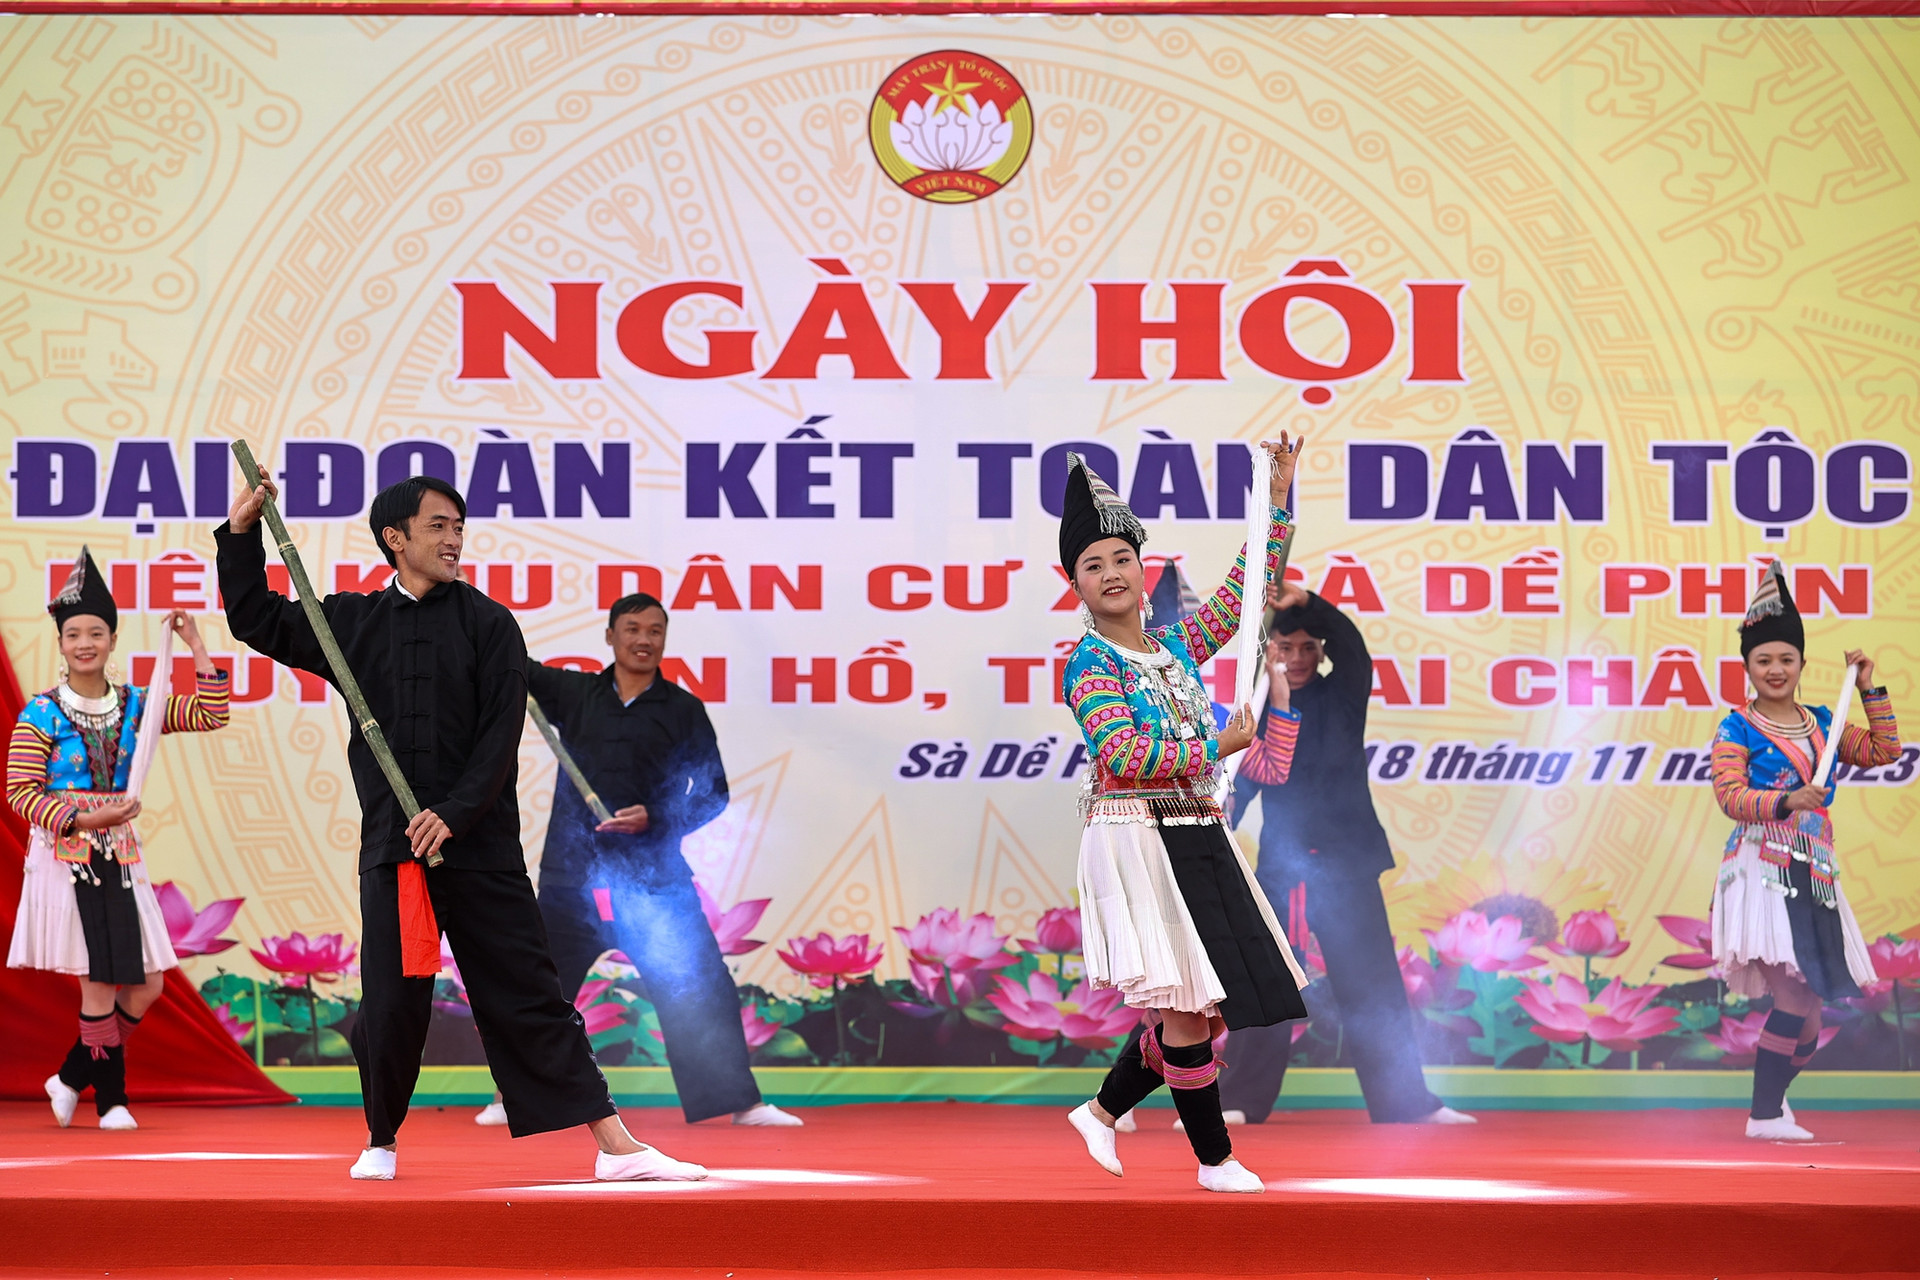 Thủ tướng chung vui Ngày hội đại đoàn kết cùng đồng bào các dân tộc tỉnh Lai Châu- Ảnh 11.